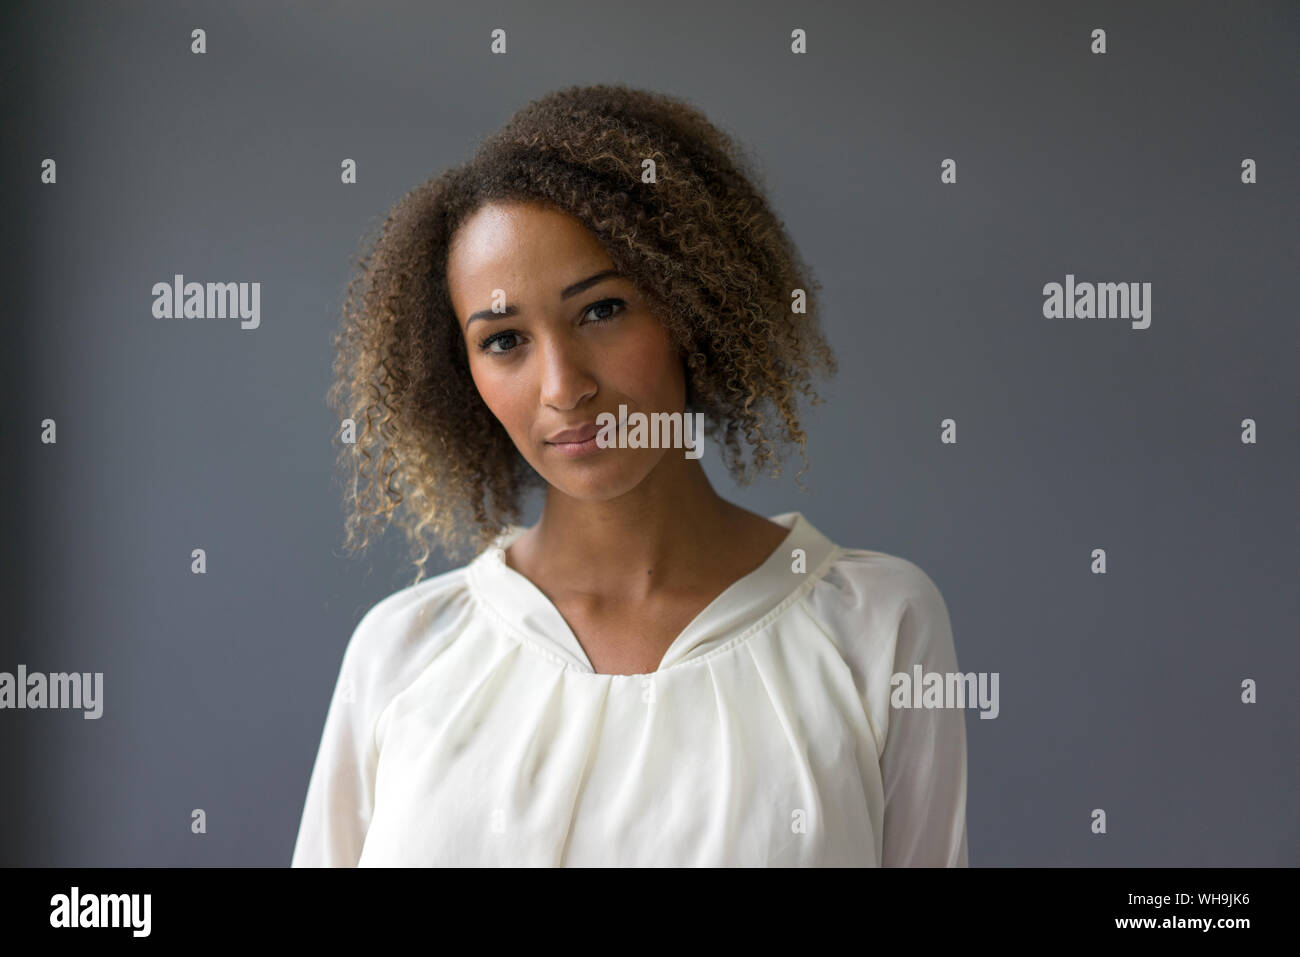 Portrait of young woman wearing blouse blanche contre l'arrière-plan gris Banque D'Images